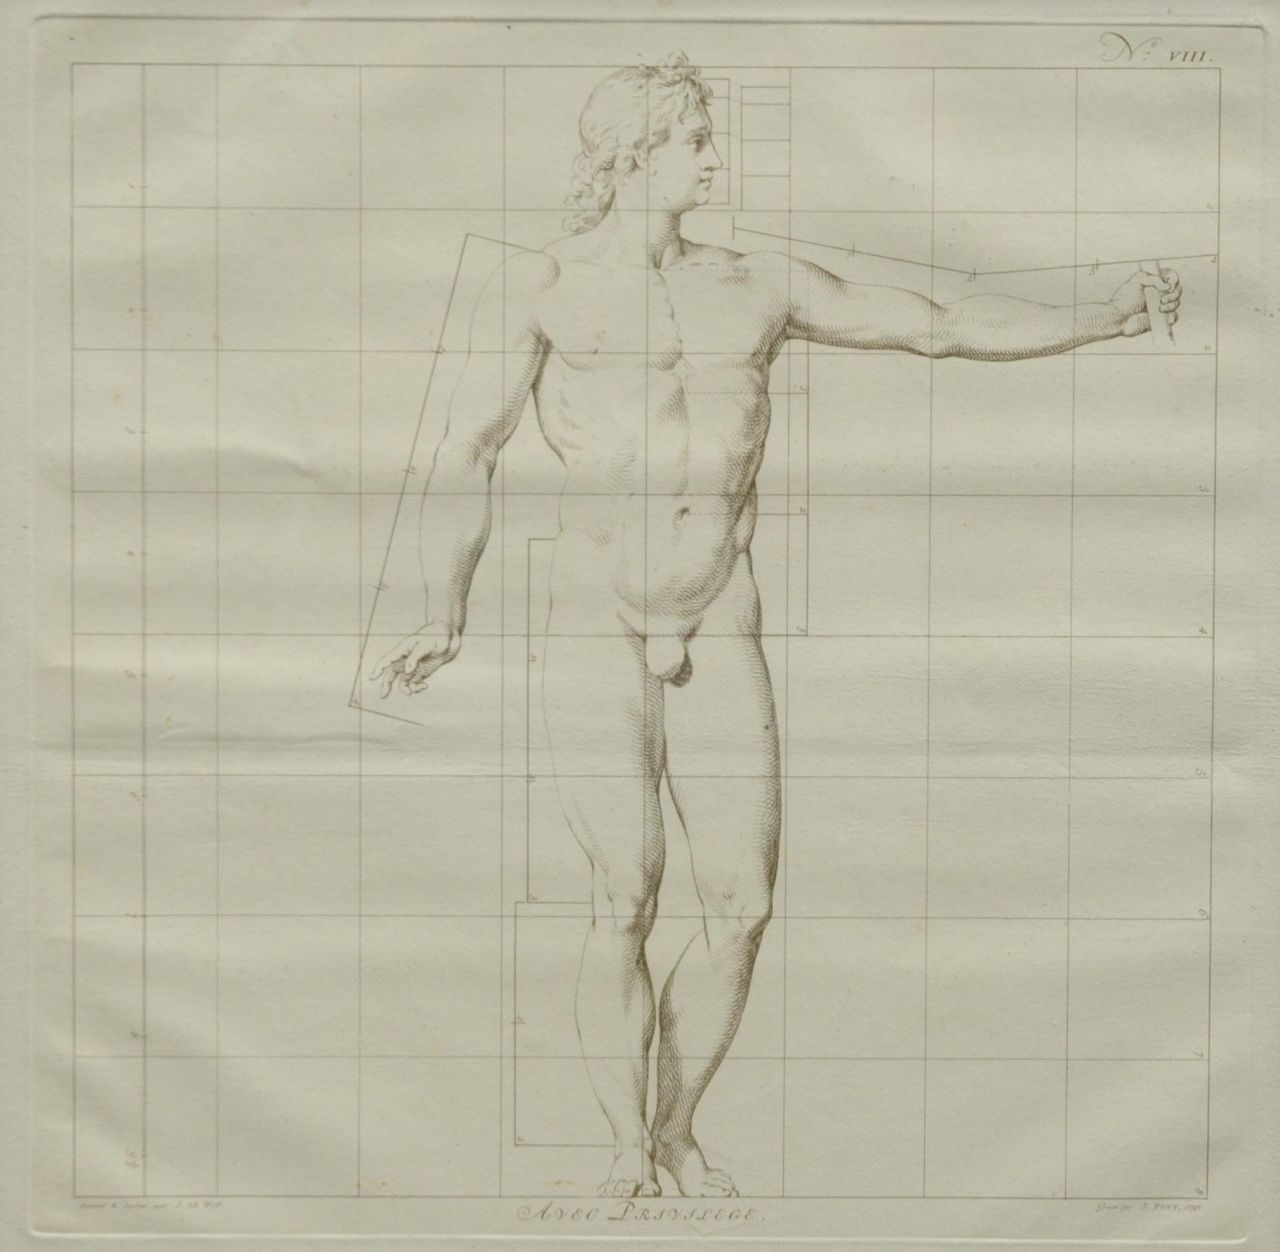 Wit J. de | Jacob de Wit, The ideal proportions of the human body - Man (no.VIII)     The ideal proportions of the human body - Man  (no.VIII), etching on paper 40.0 x 40.0 cm